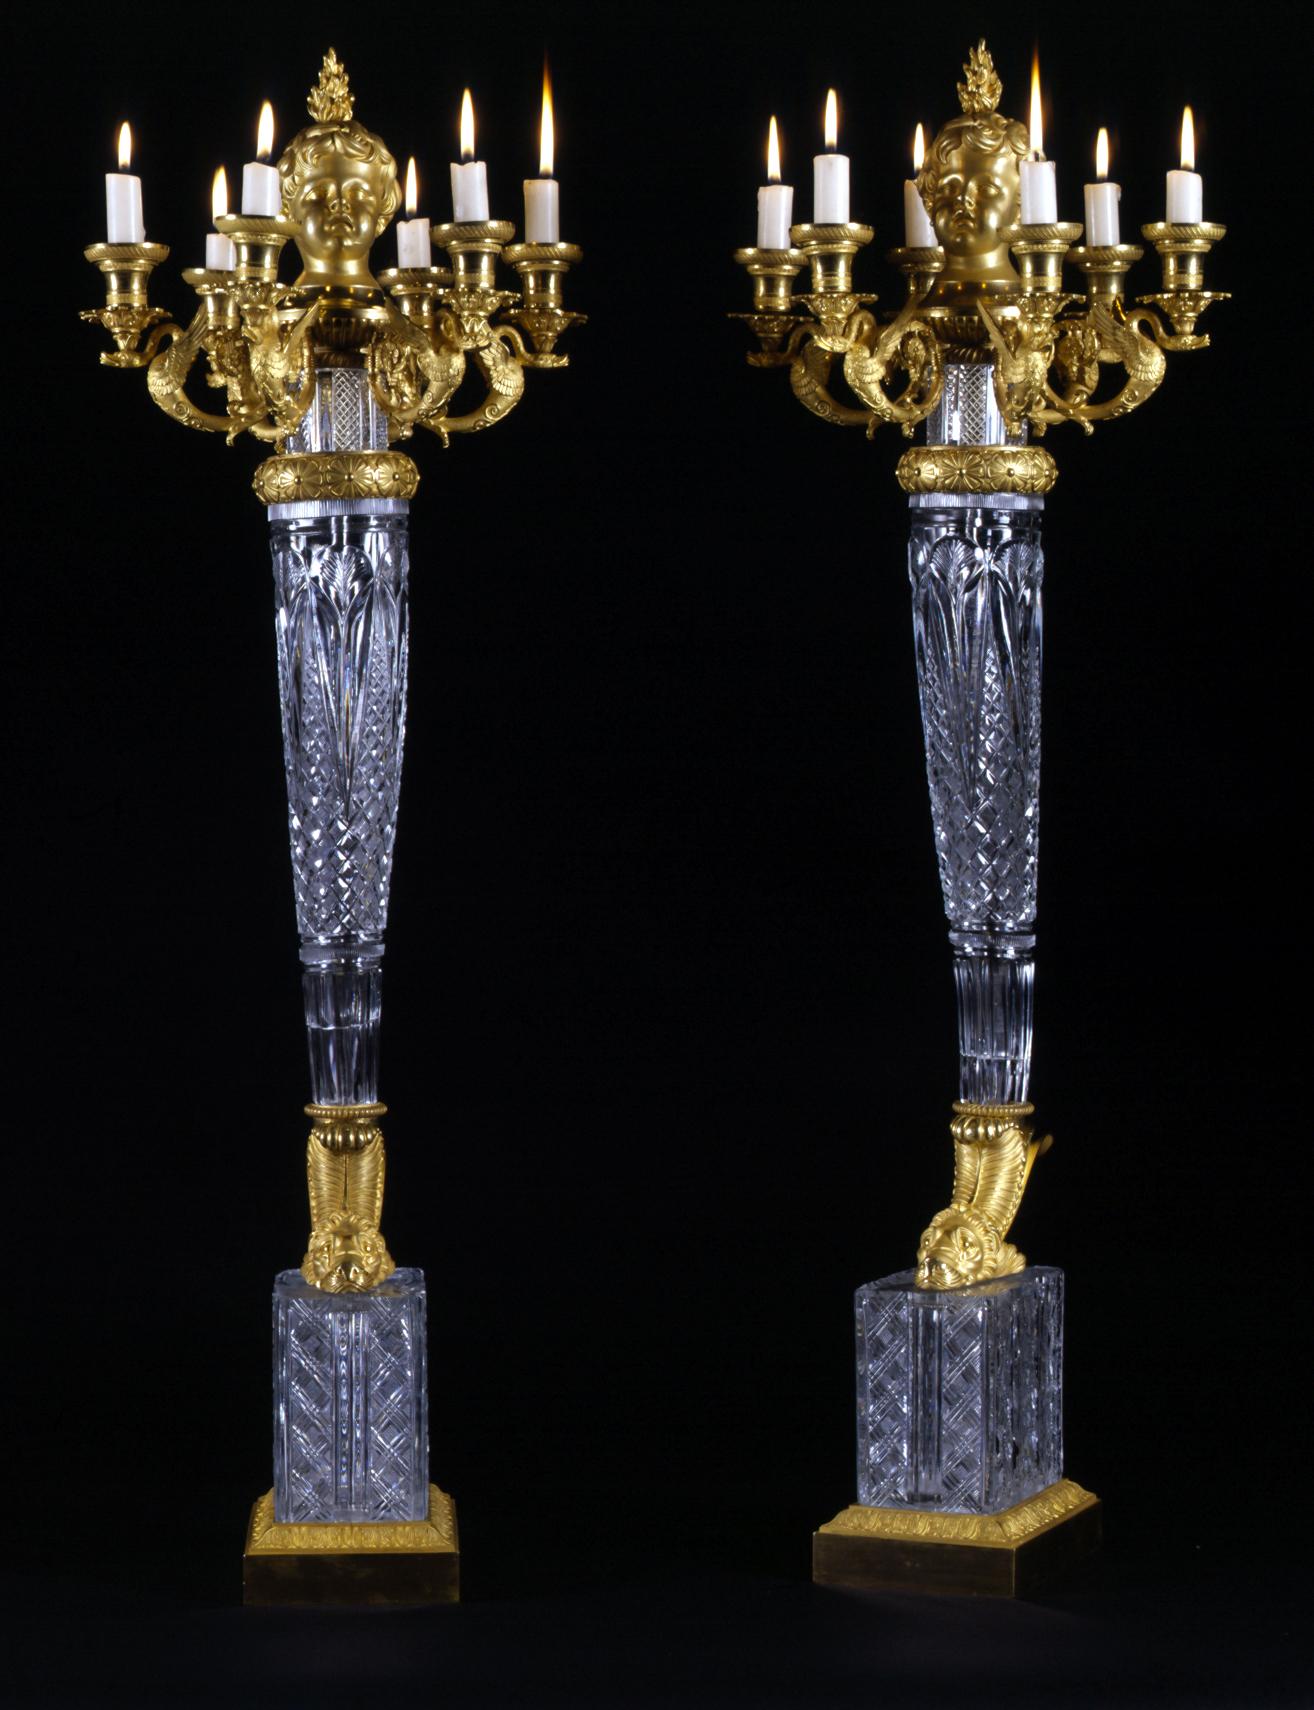 Ein bemerkenswertes und sehr wichtiges Paar Empire-Kandelaber aus vergoldeter Bronze und geschliffenem Kristall, die Escalier De Cristal De Paris zugeschrieben werden.

Französisch, um 1819.

Dieses außergewöhnliche Kandelaberpaar kann mit